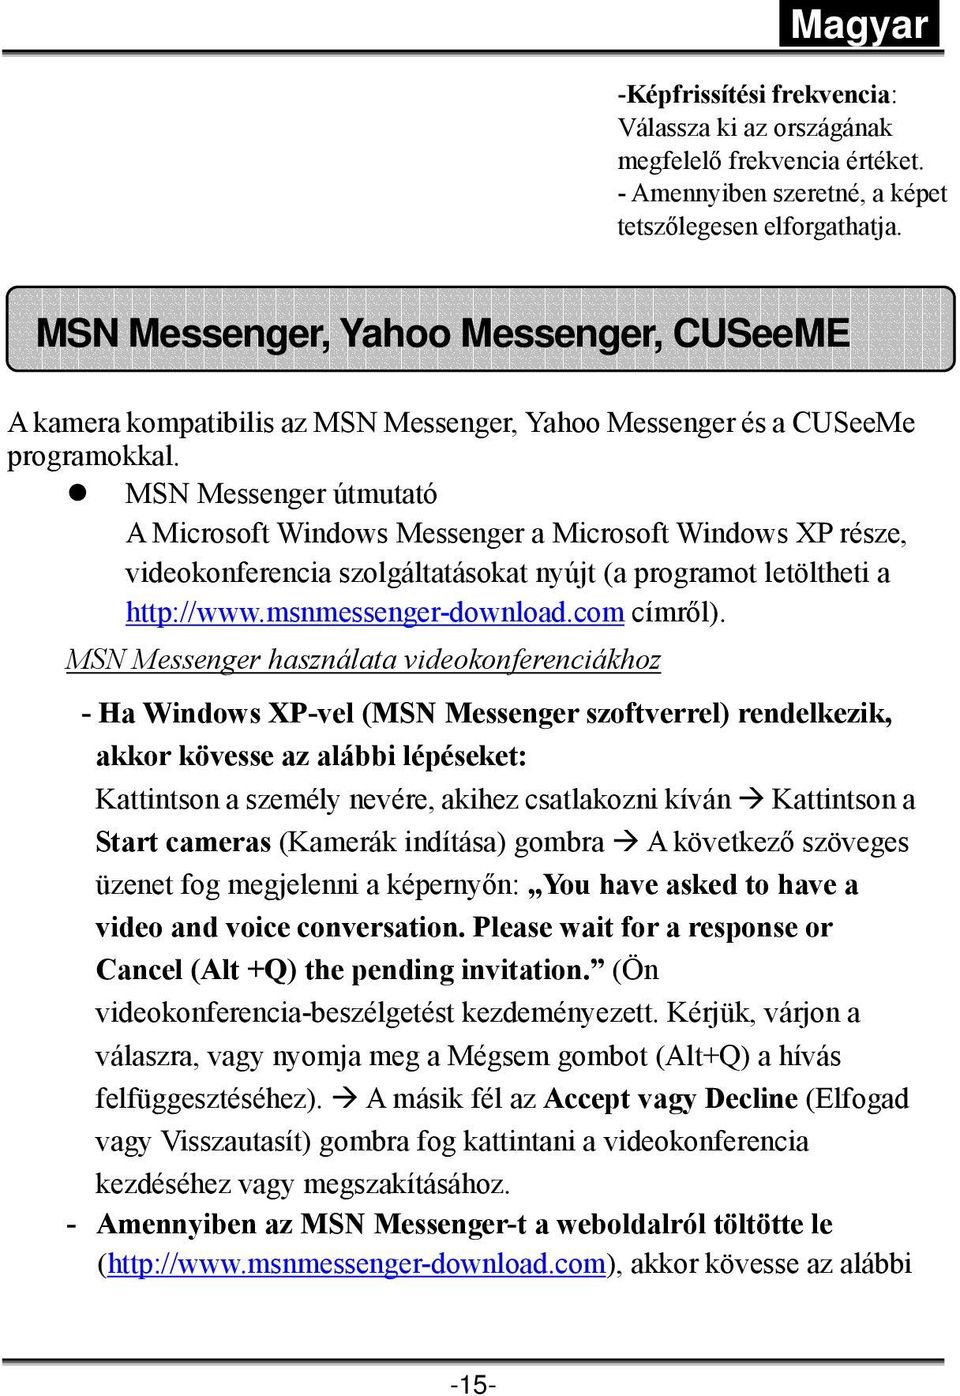 MSN Messenger útmutató A Microsoft Windows Messenger a Microsoft Windows XP része, videokonferencia szolgáltatásokat nyújt (a programot letöltheti a http://www.msnmessenger-download.com címről).